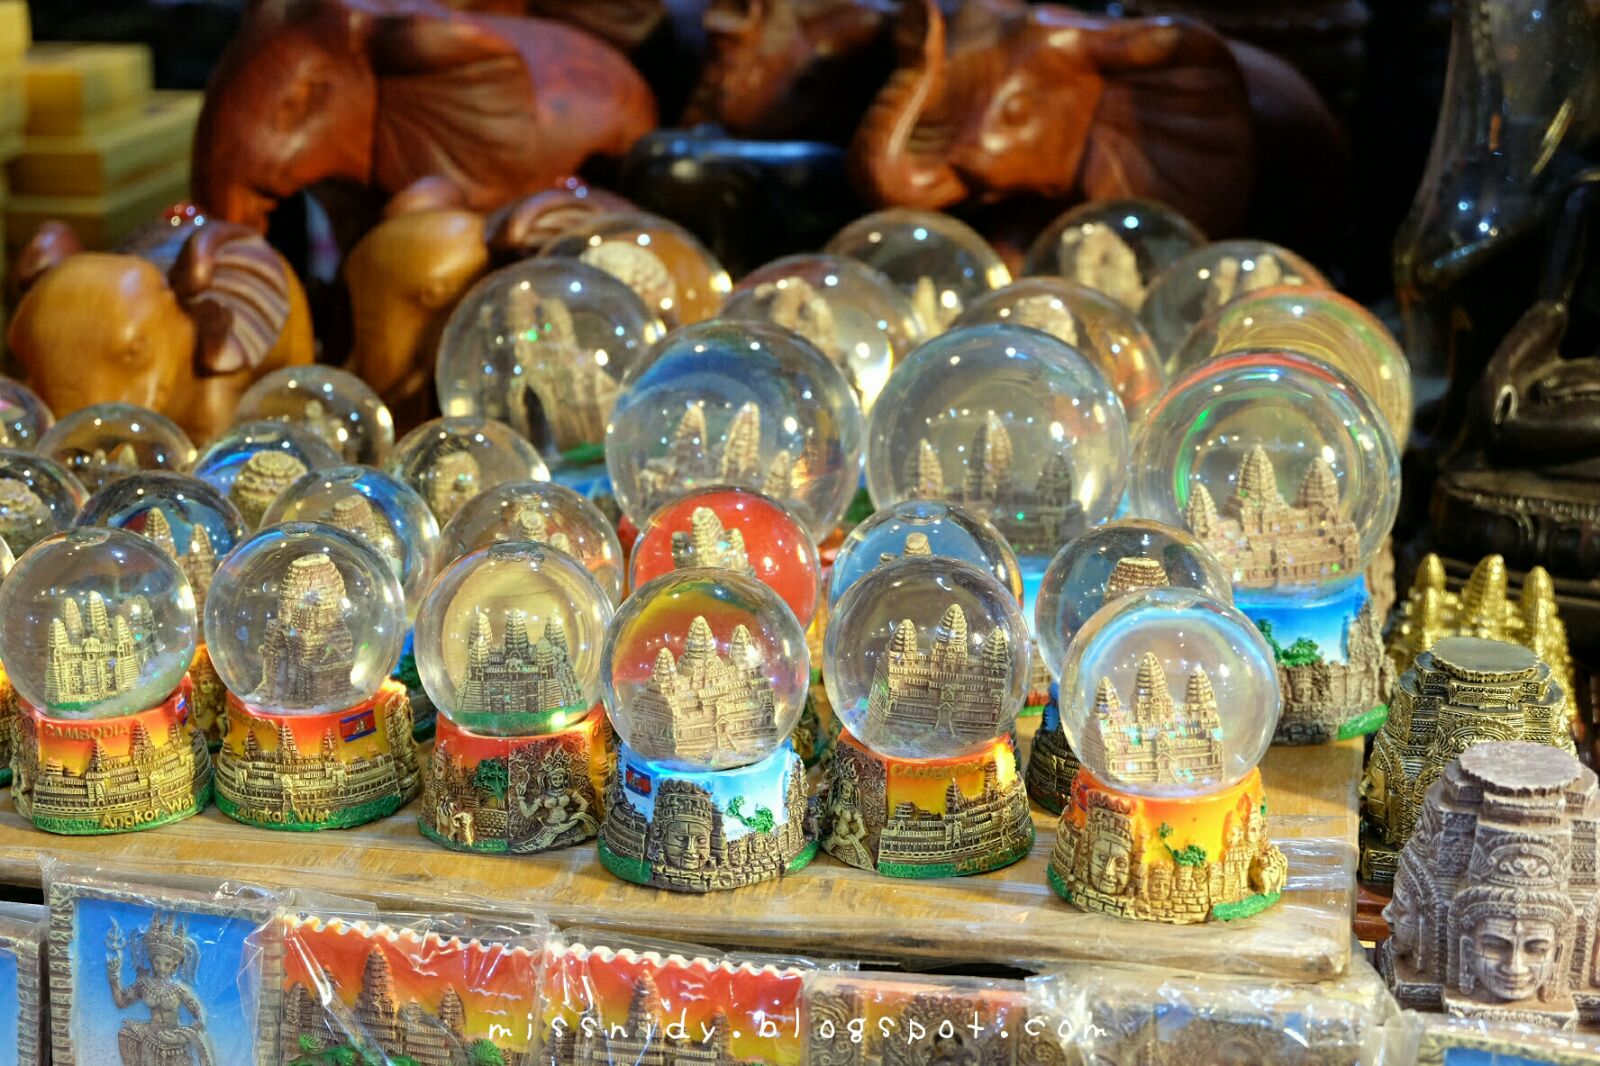 beli oleh-oleh snow globe di night market siem reap